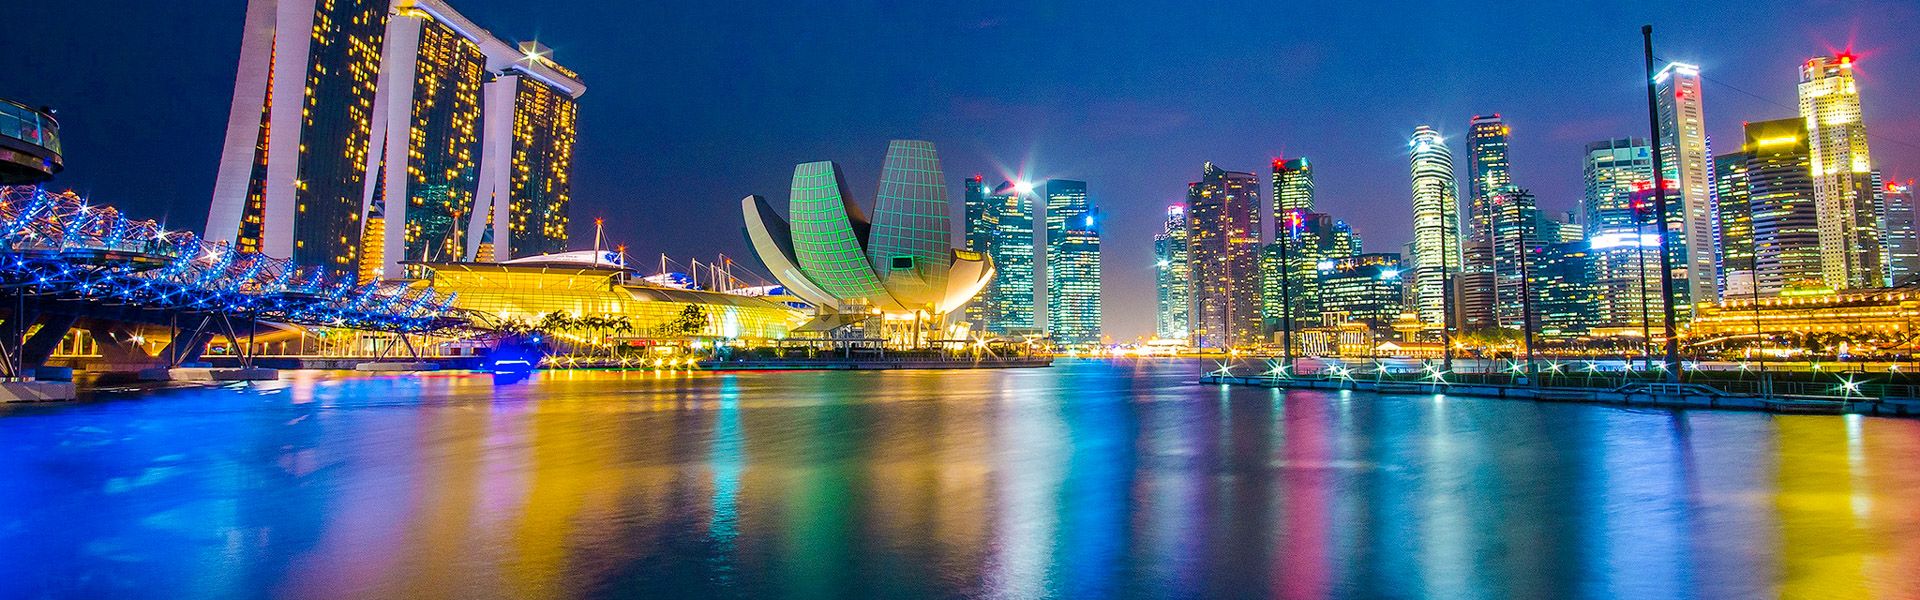 Singapur - Marina Bay Sands |  Nirut Phengjaiwong, Pixabay / Chamleon